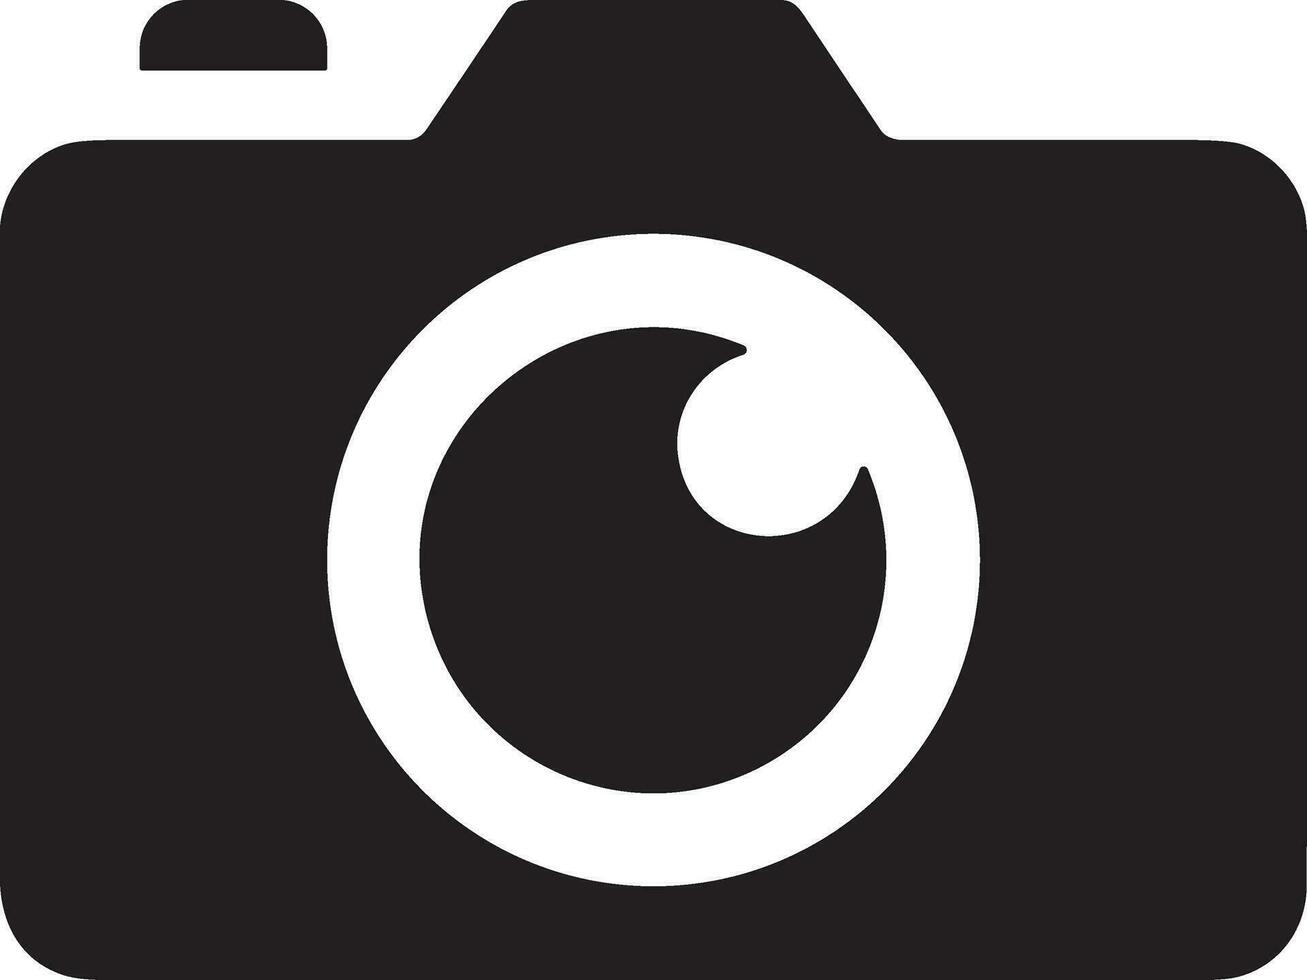 Câmera fotografia ícone símbolo vetor imagem. ilustração do multimídia fotográfico lente gráfico Projeto imagem